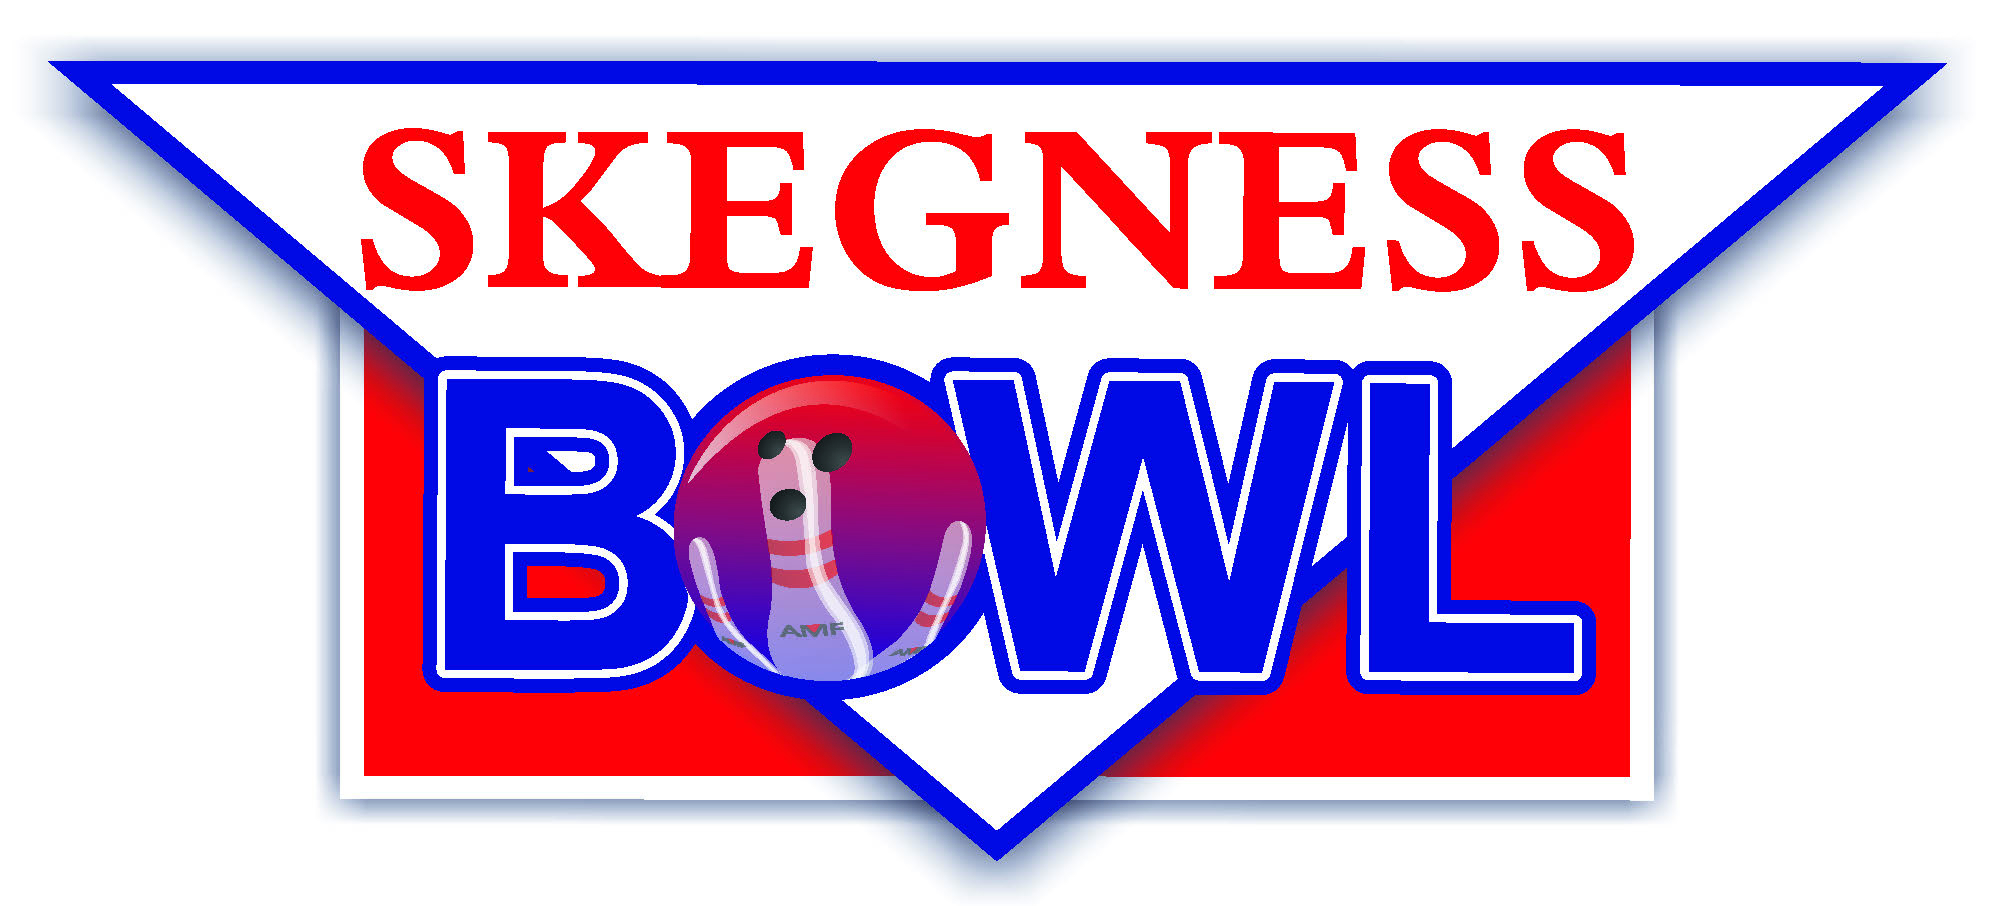 skegness bowl